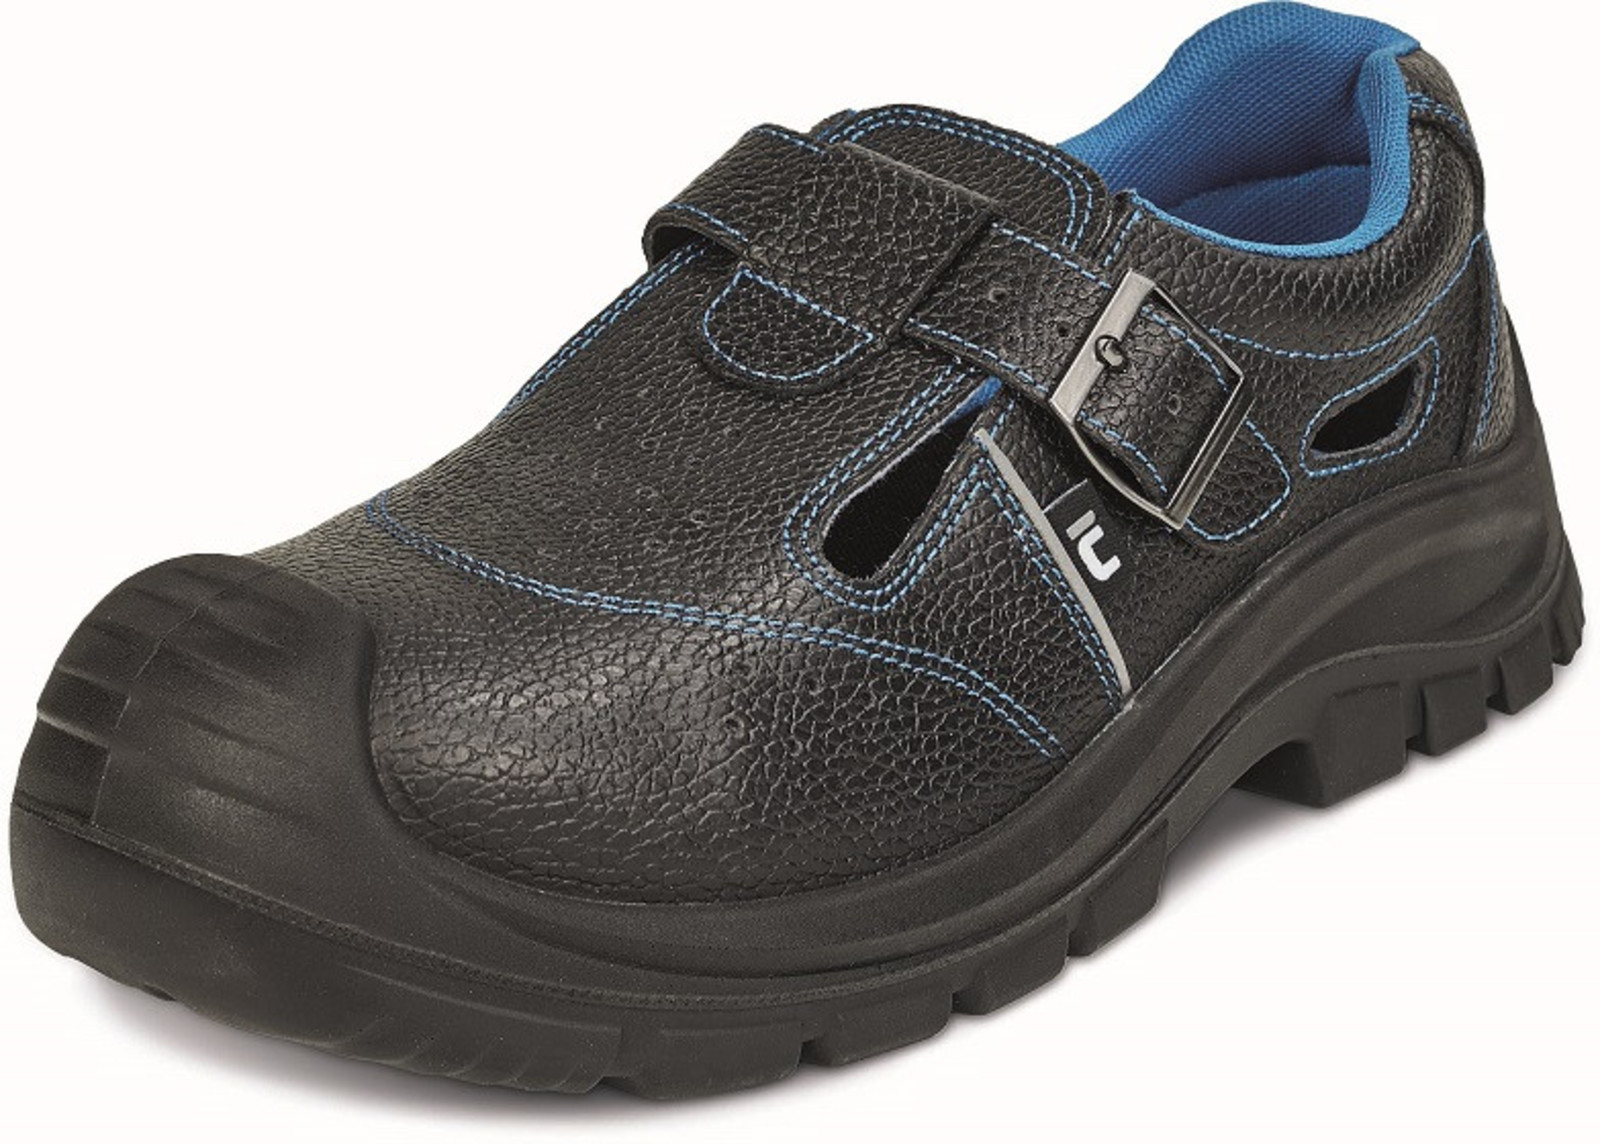 Bezpečnostné sandále Raven XT S1 SRC - veľkosť: 42, farba: čierna